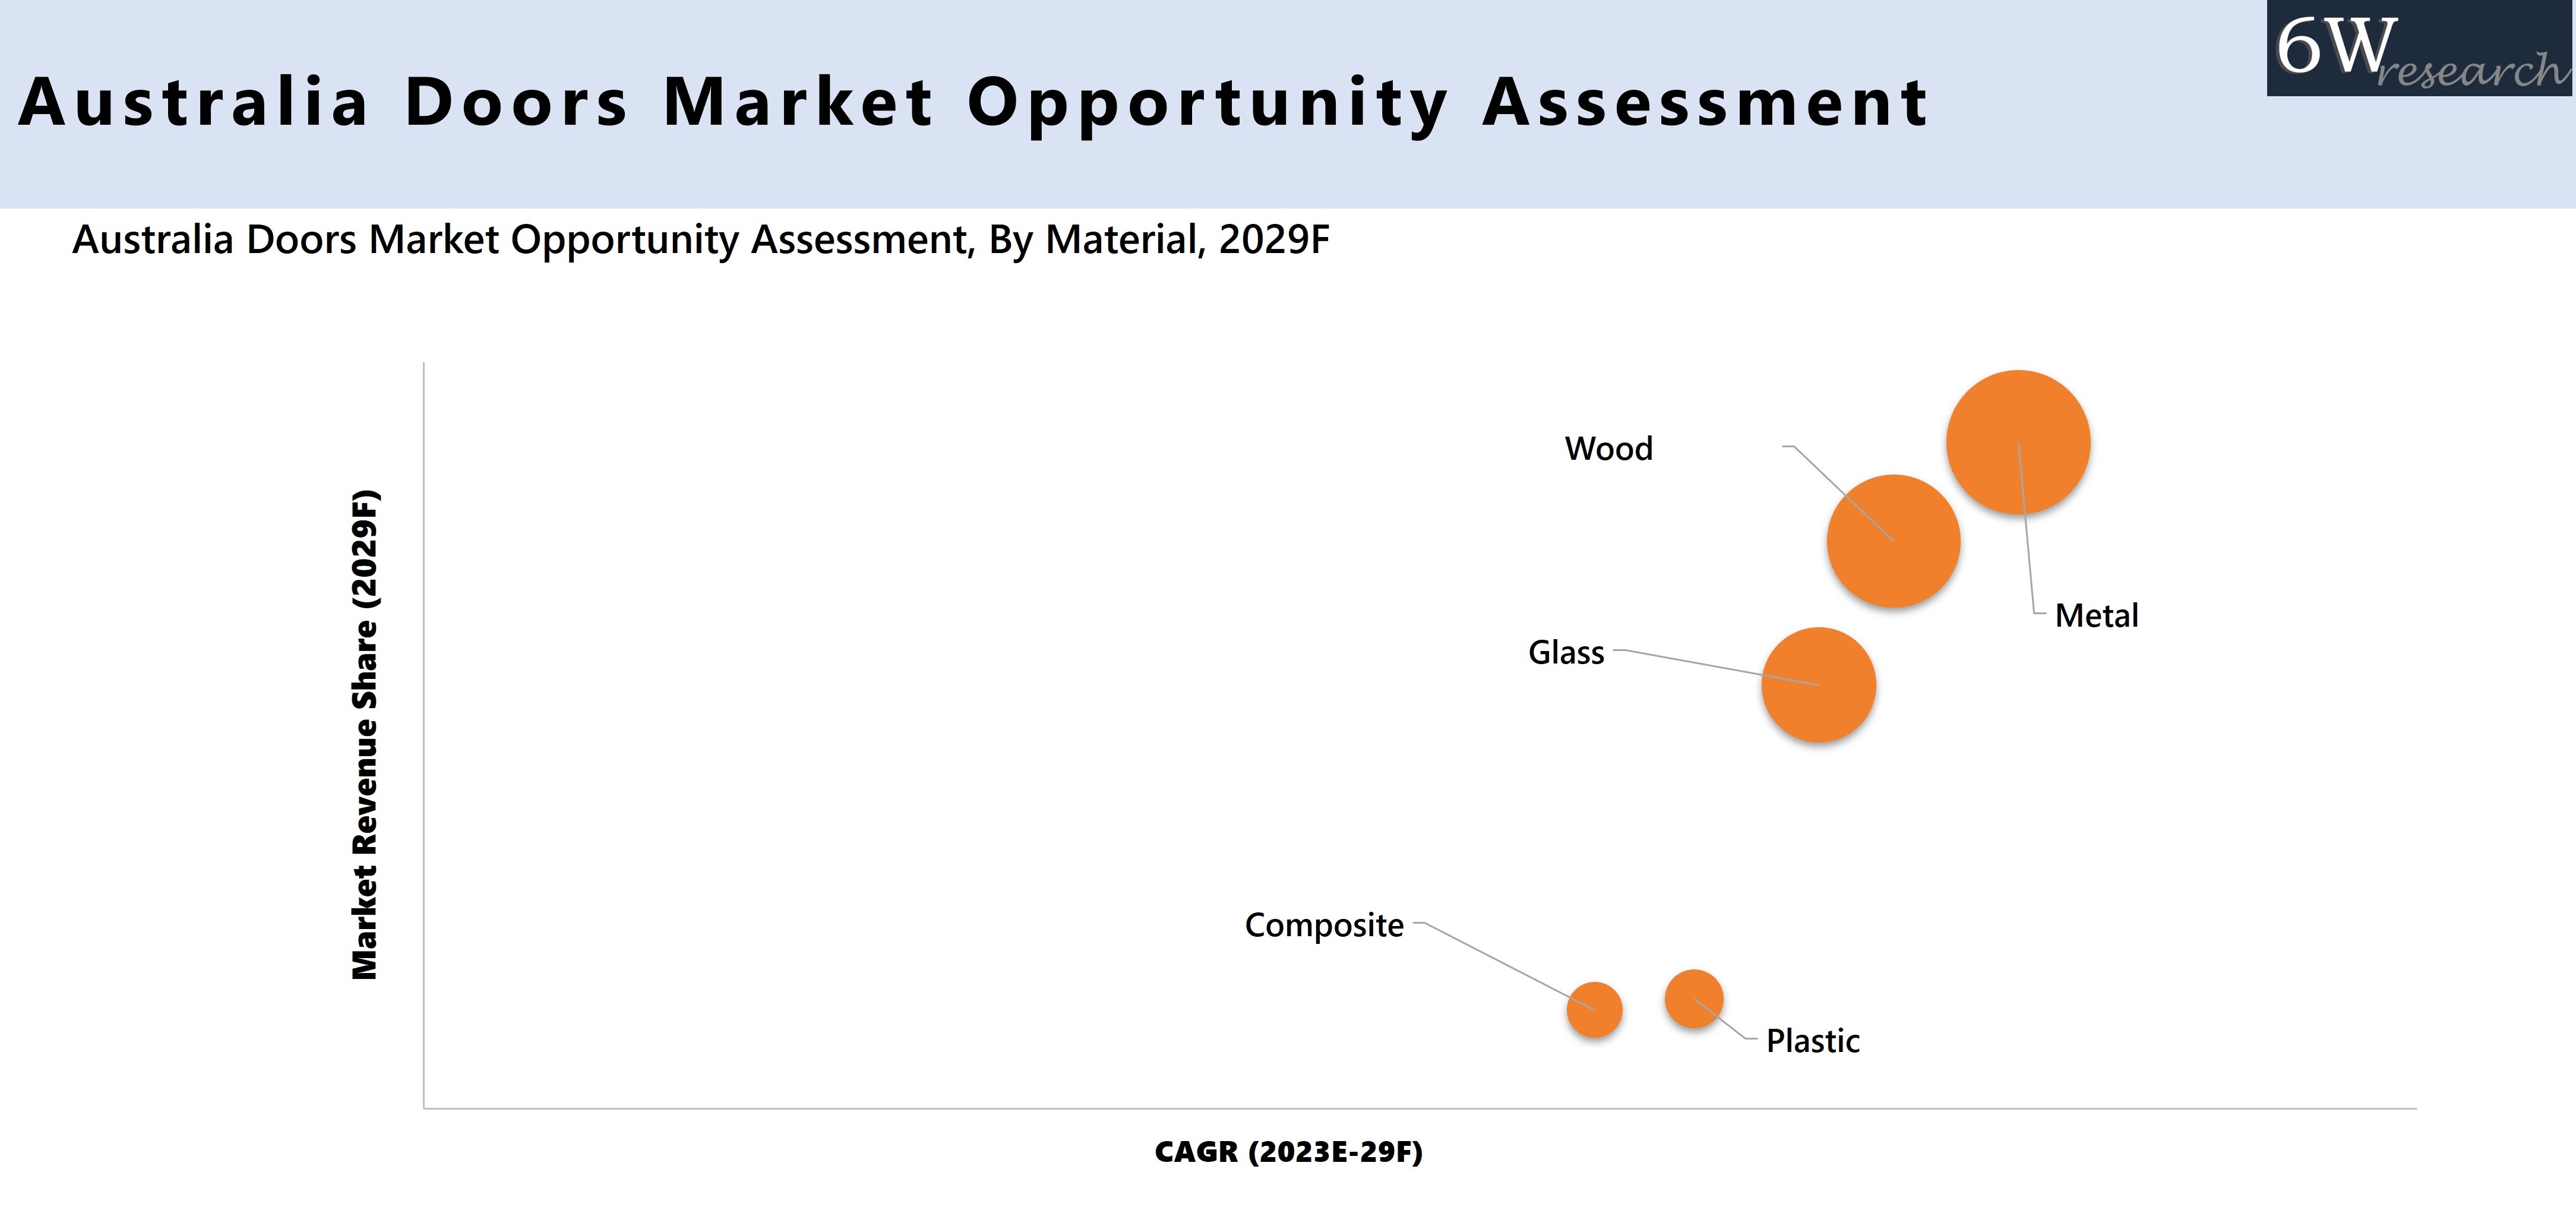 Australia Doors Market Opportunity Assessment